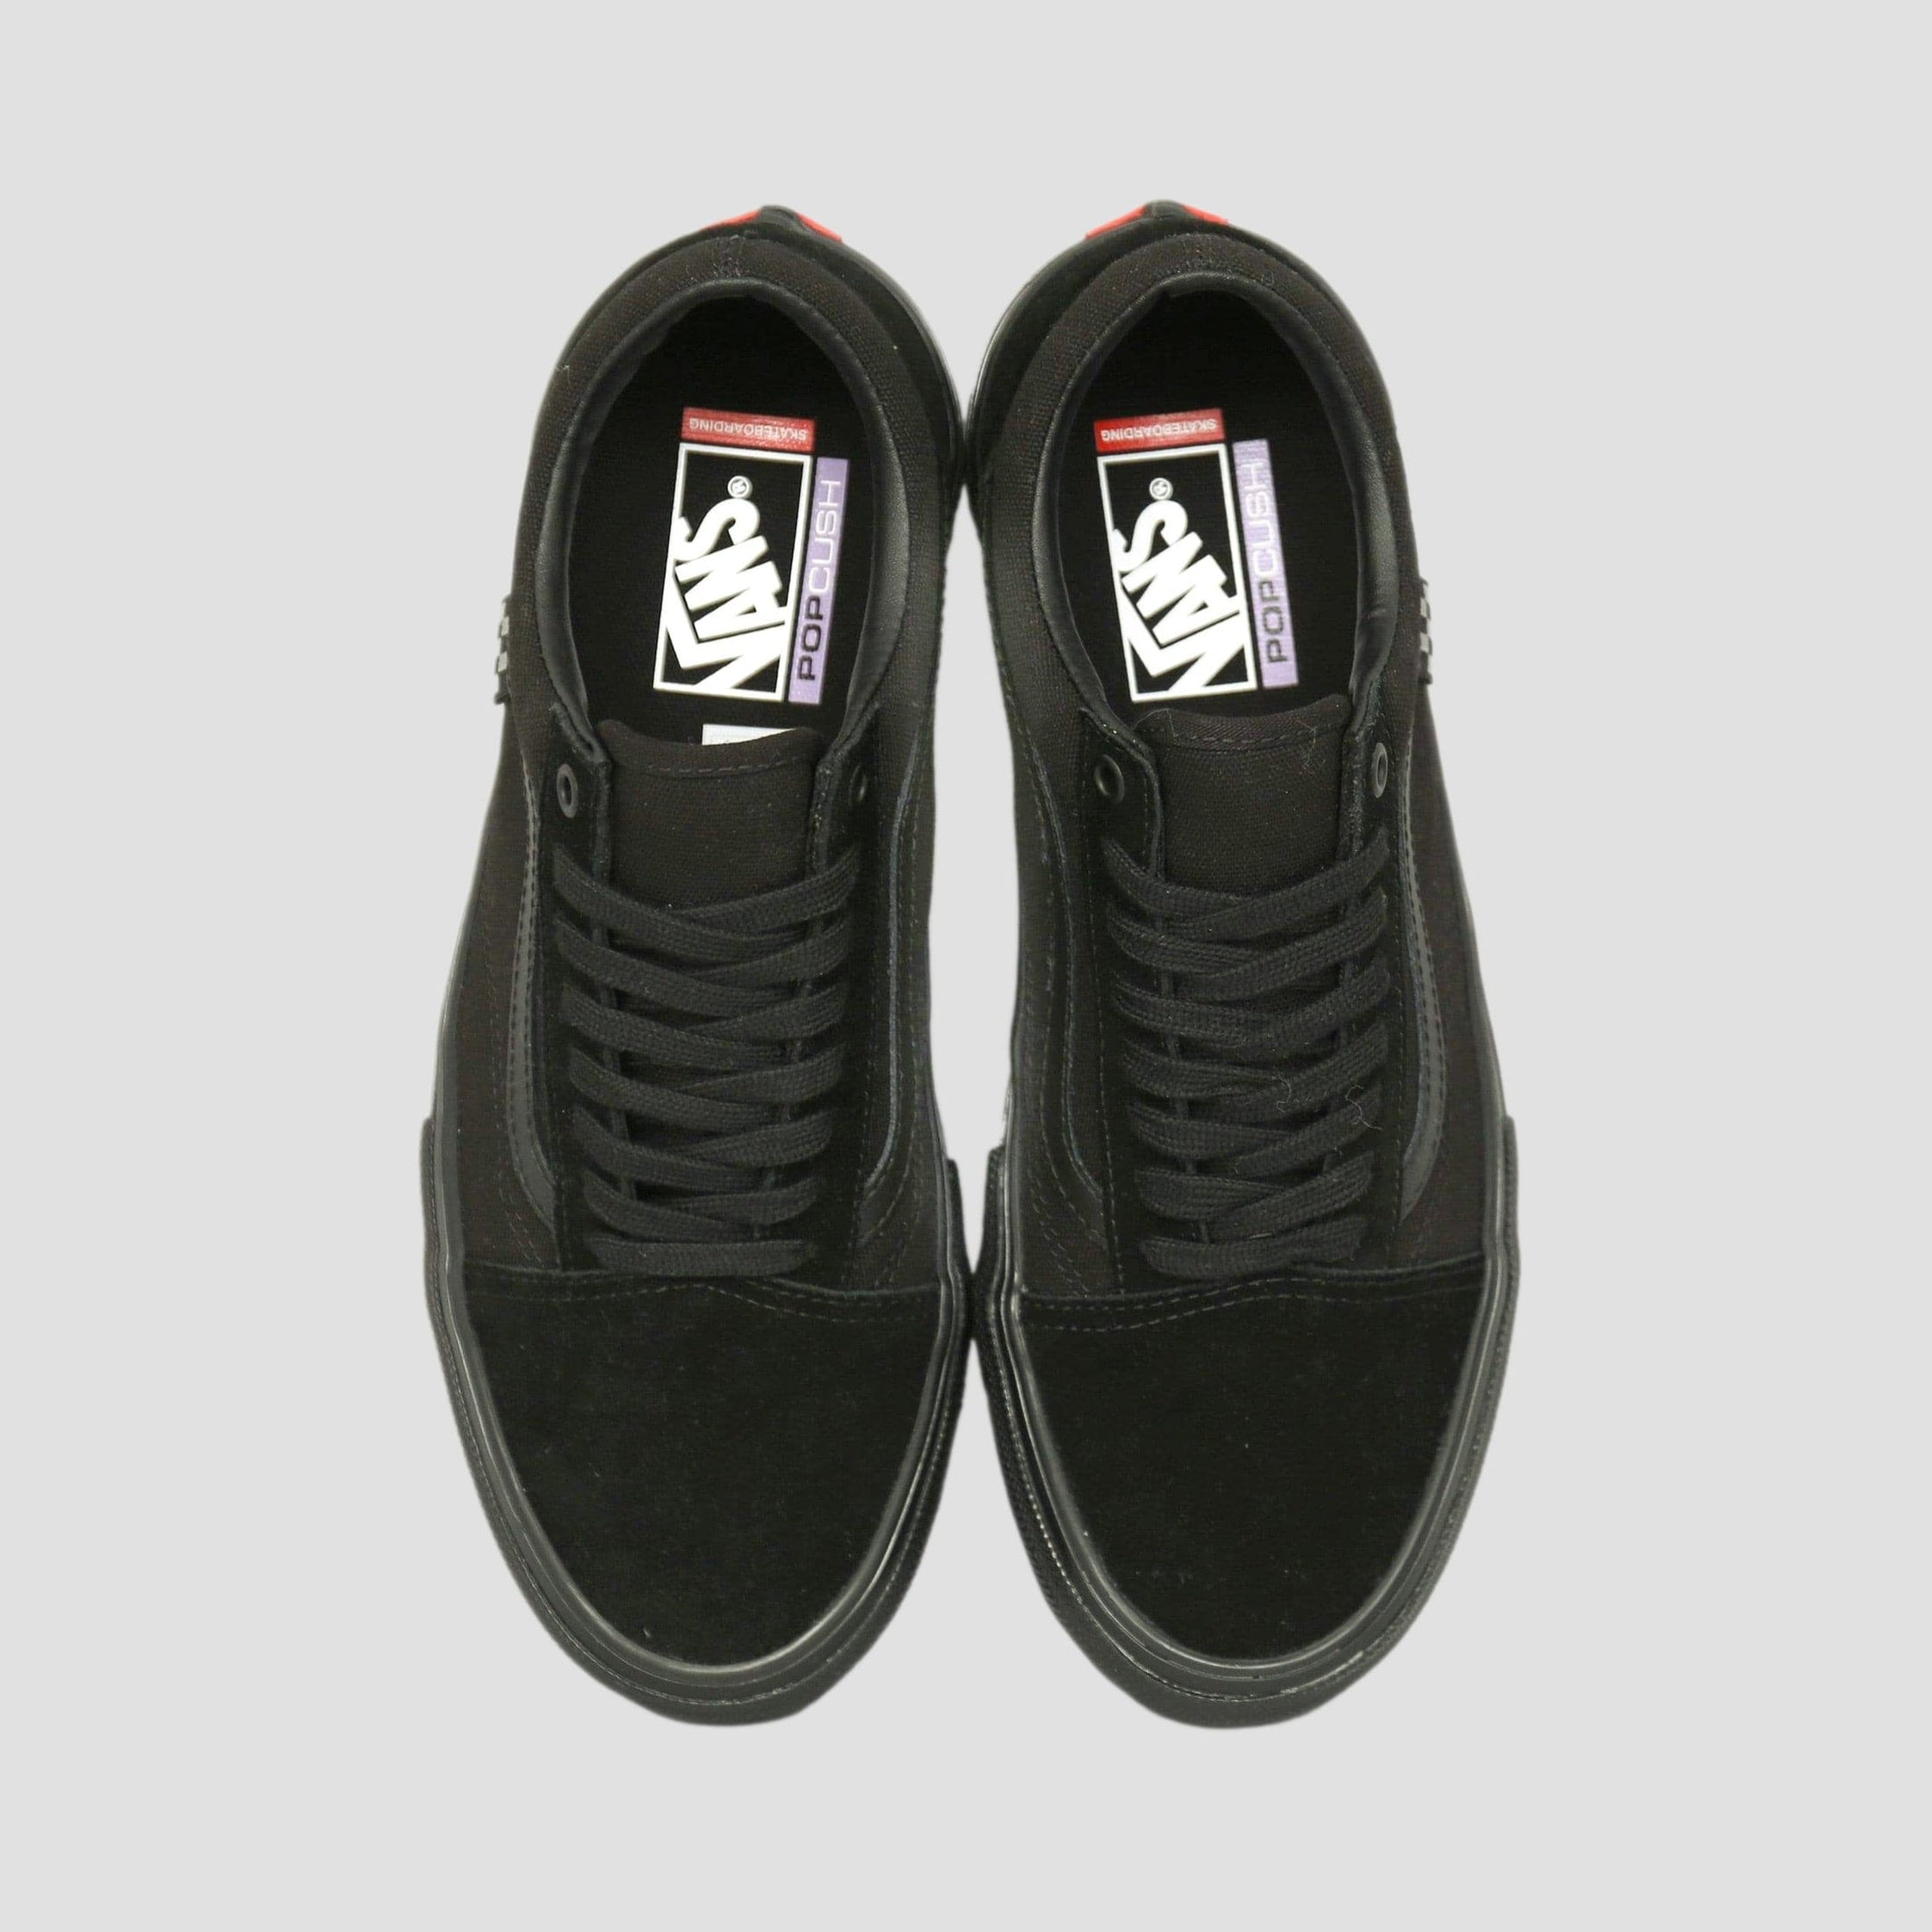 Vans Skate Old Skool Shoes Black / Black